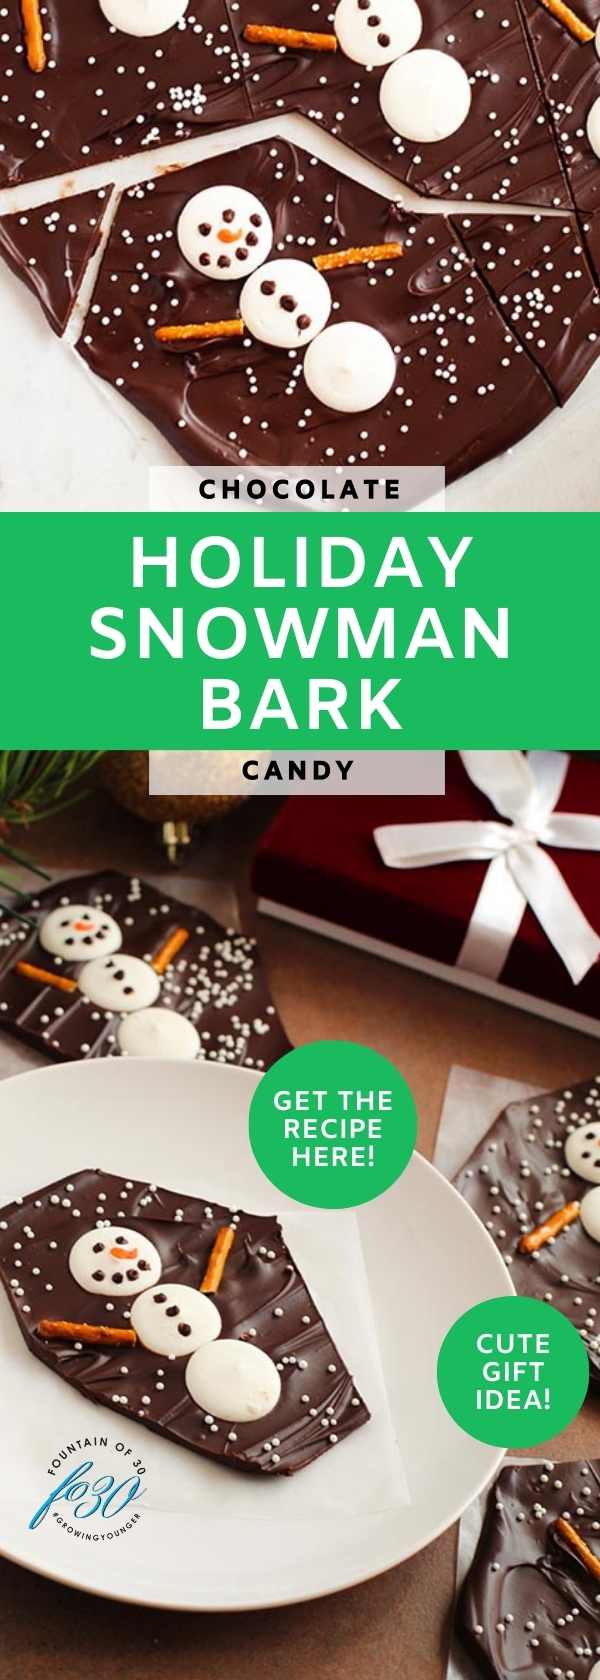 snowman chocolate bark treats holiday gift idea fountainof30